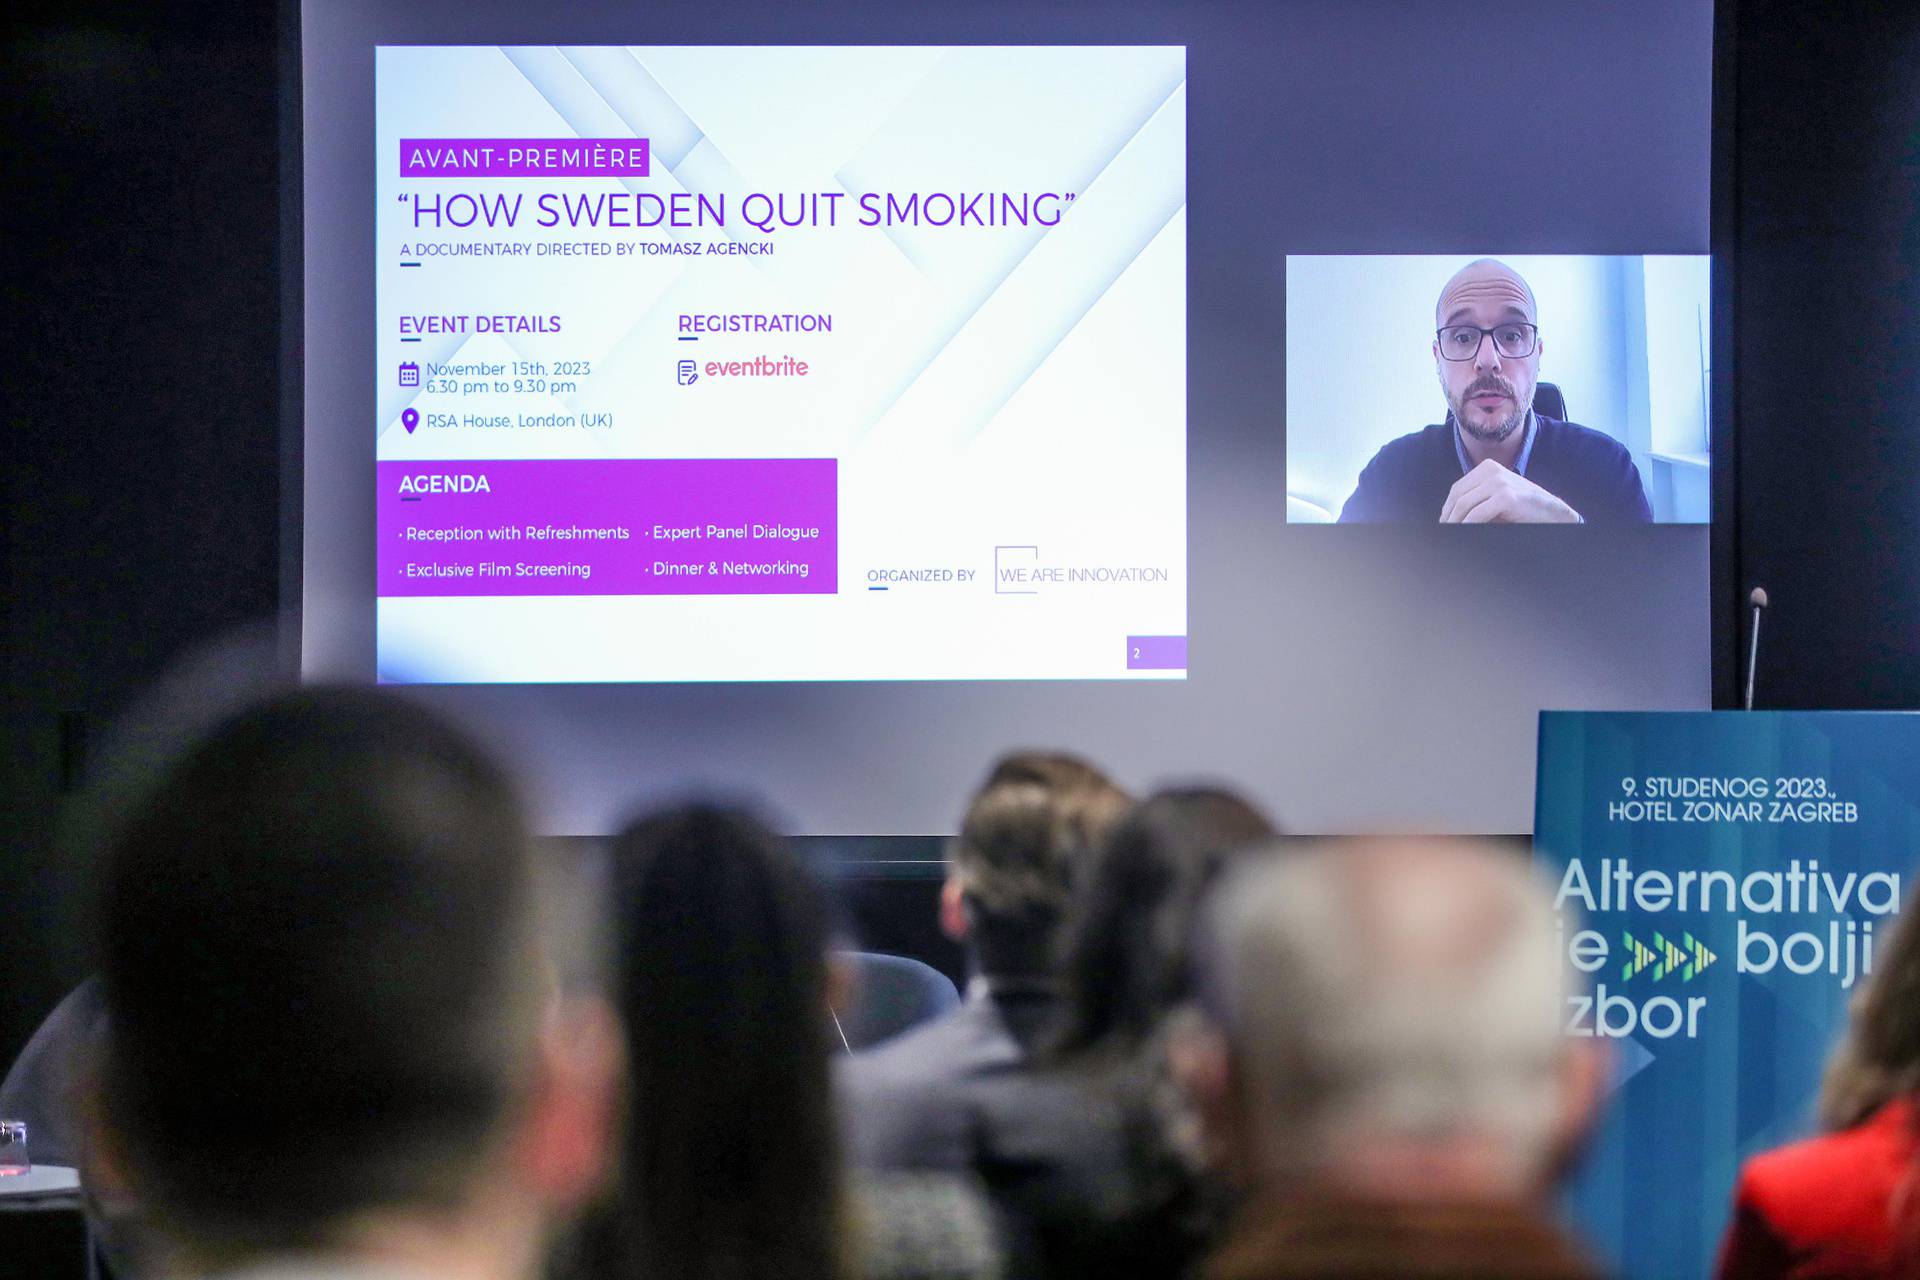 Održana konferencija o alternativnim duhanskim i nikotinskim proizvodima